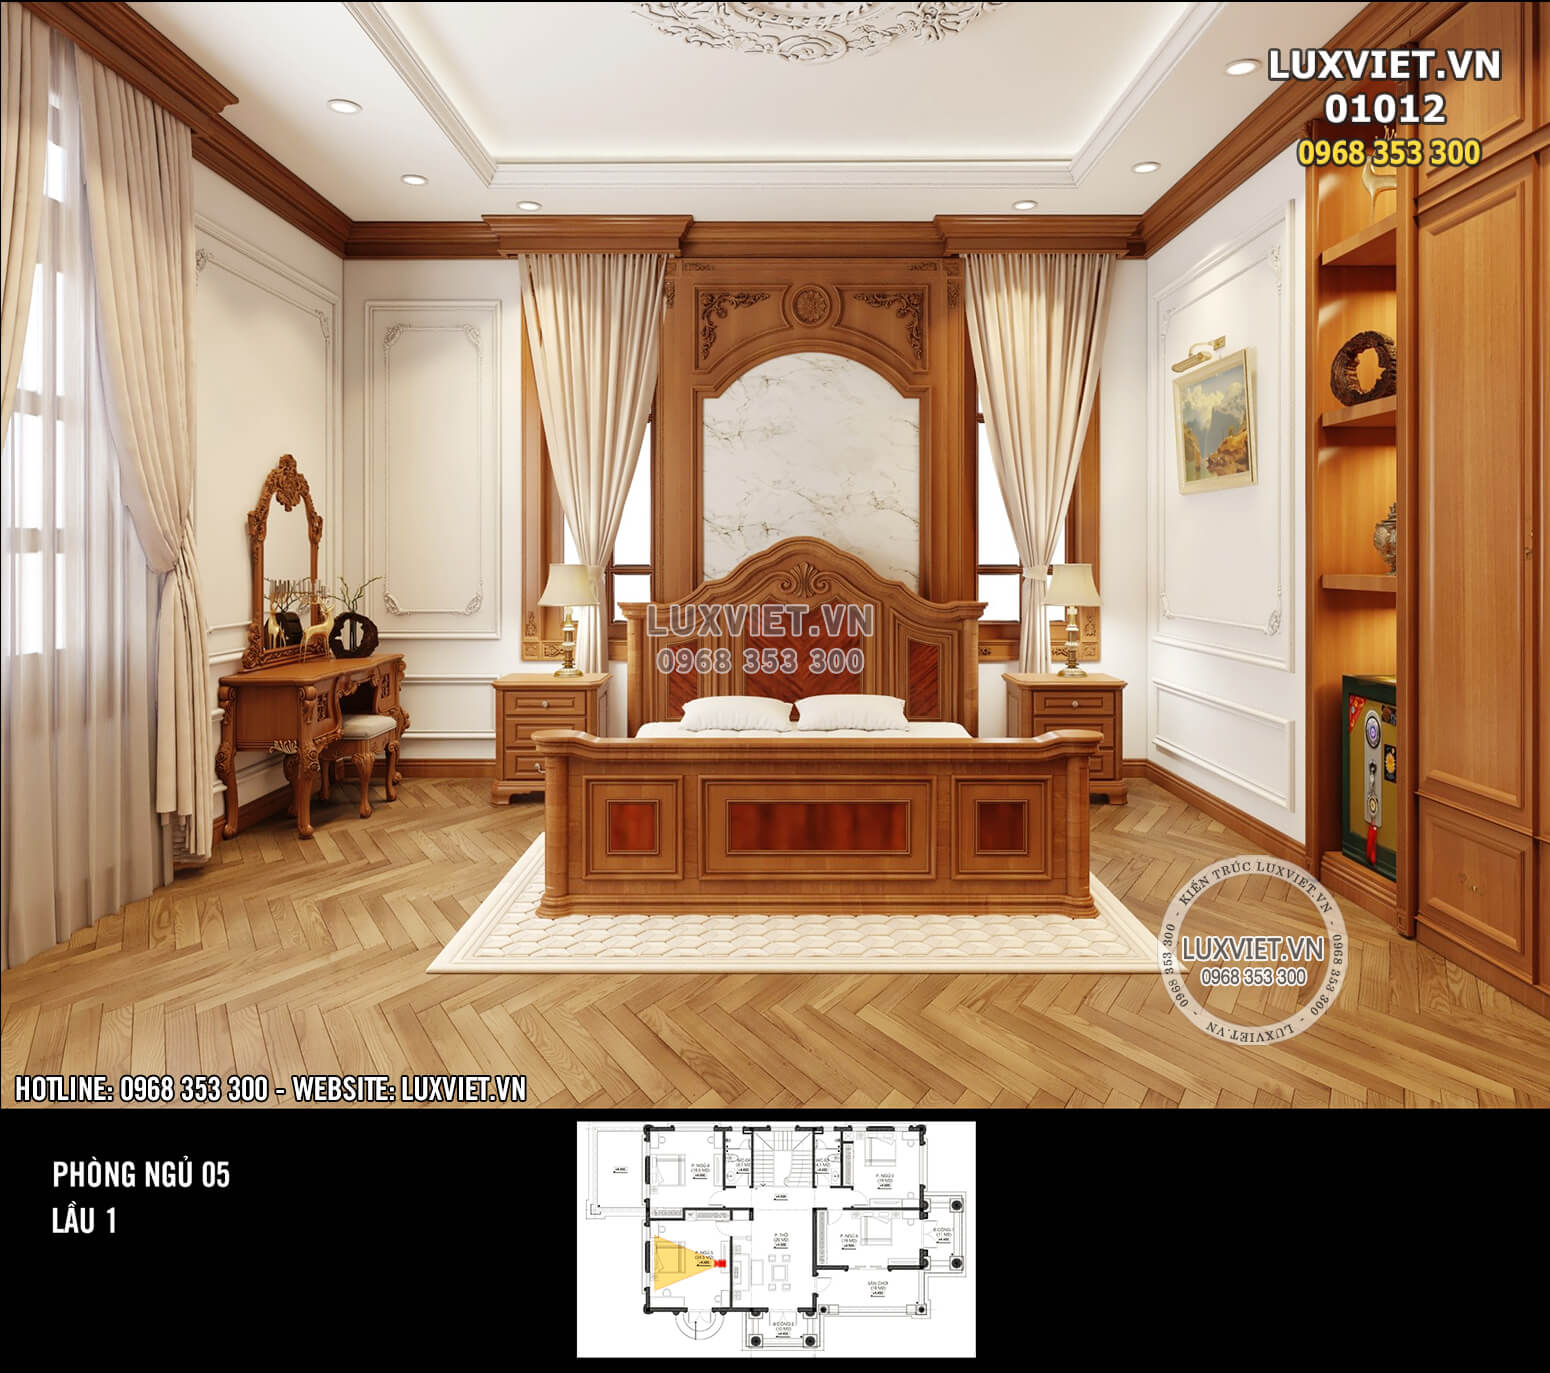 Hình ảnh: Không gian phòng ngủ 5 (lầu 1) - nội thất ốp gỗ tân cổ điển 